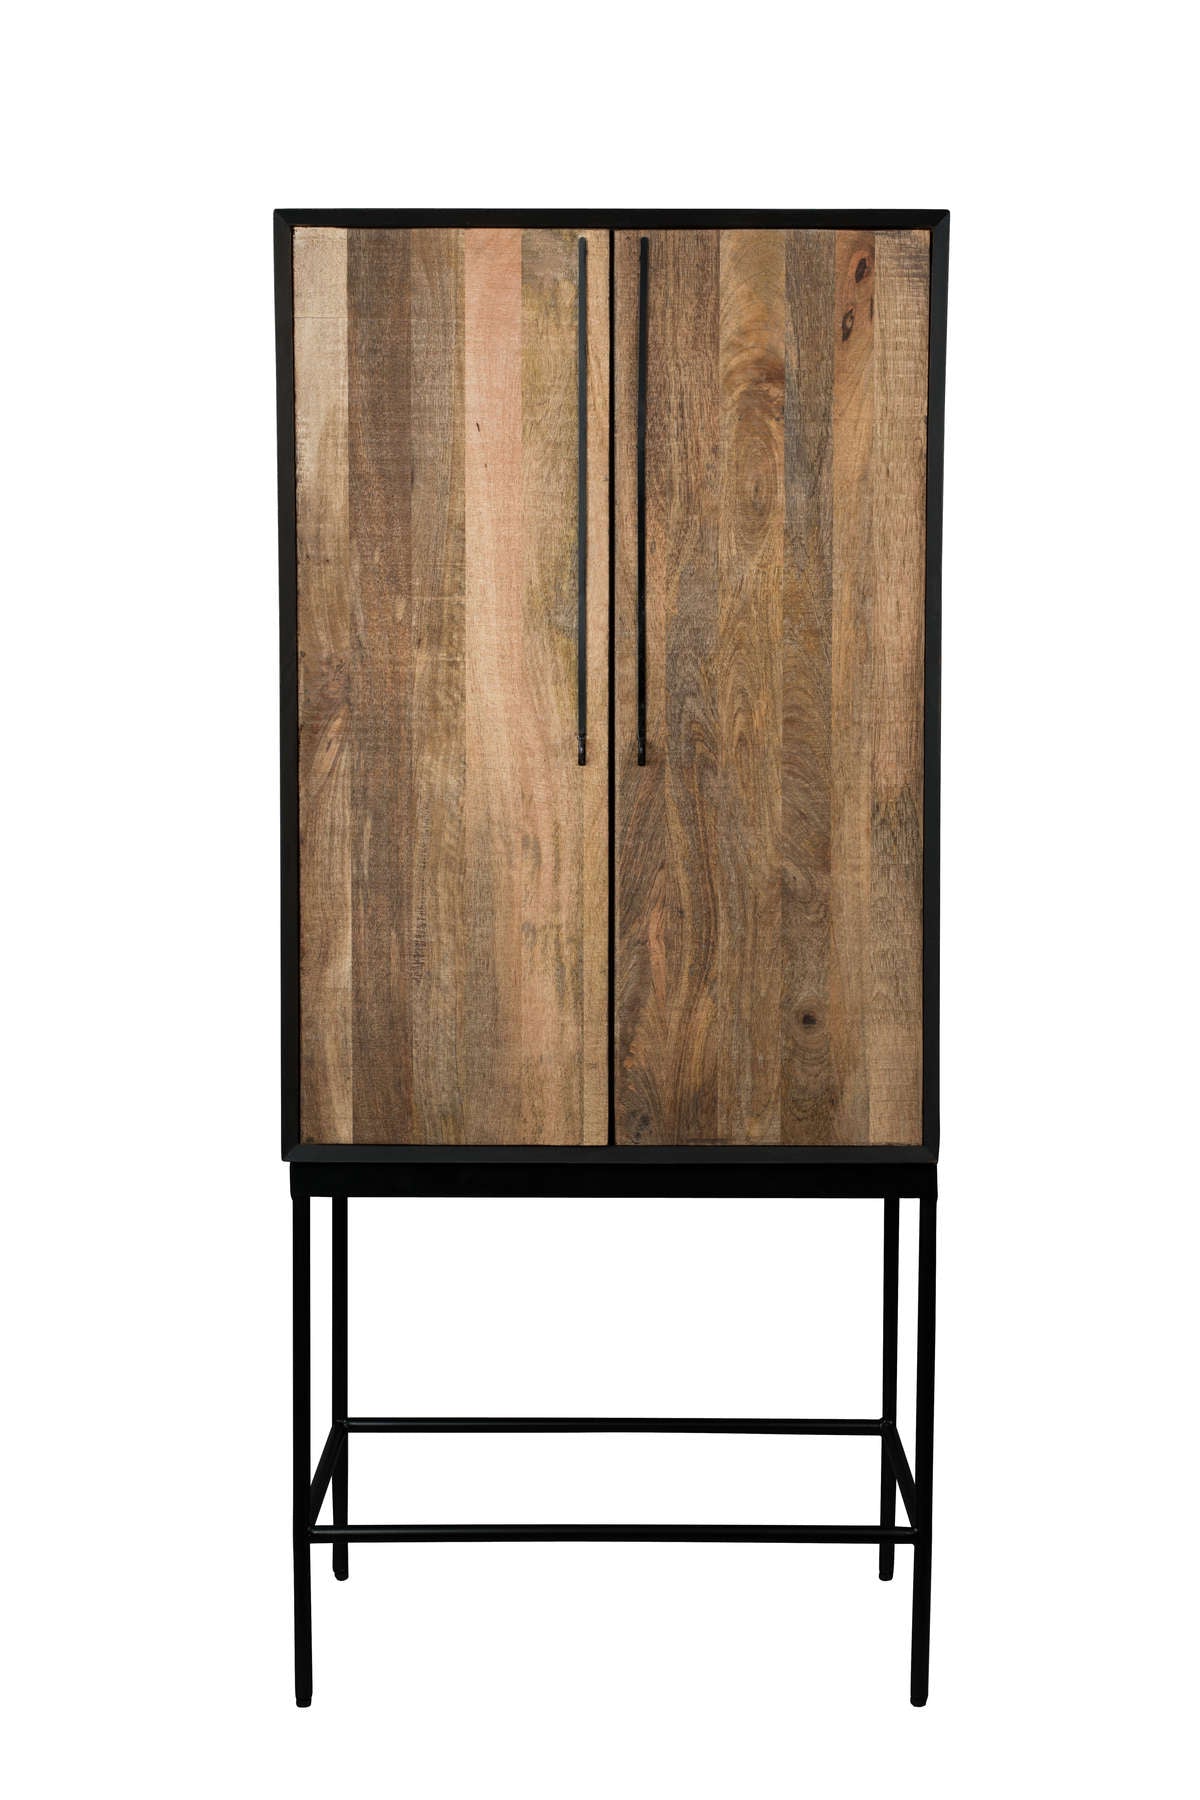 - Design Designer for on bedroom dressers room. cabinets living Functional for Eye